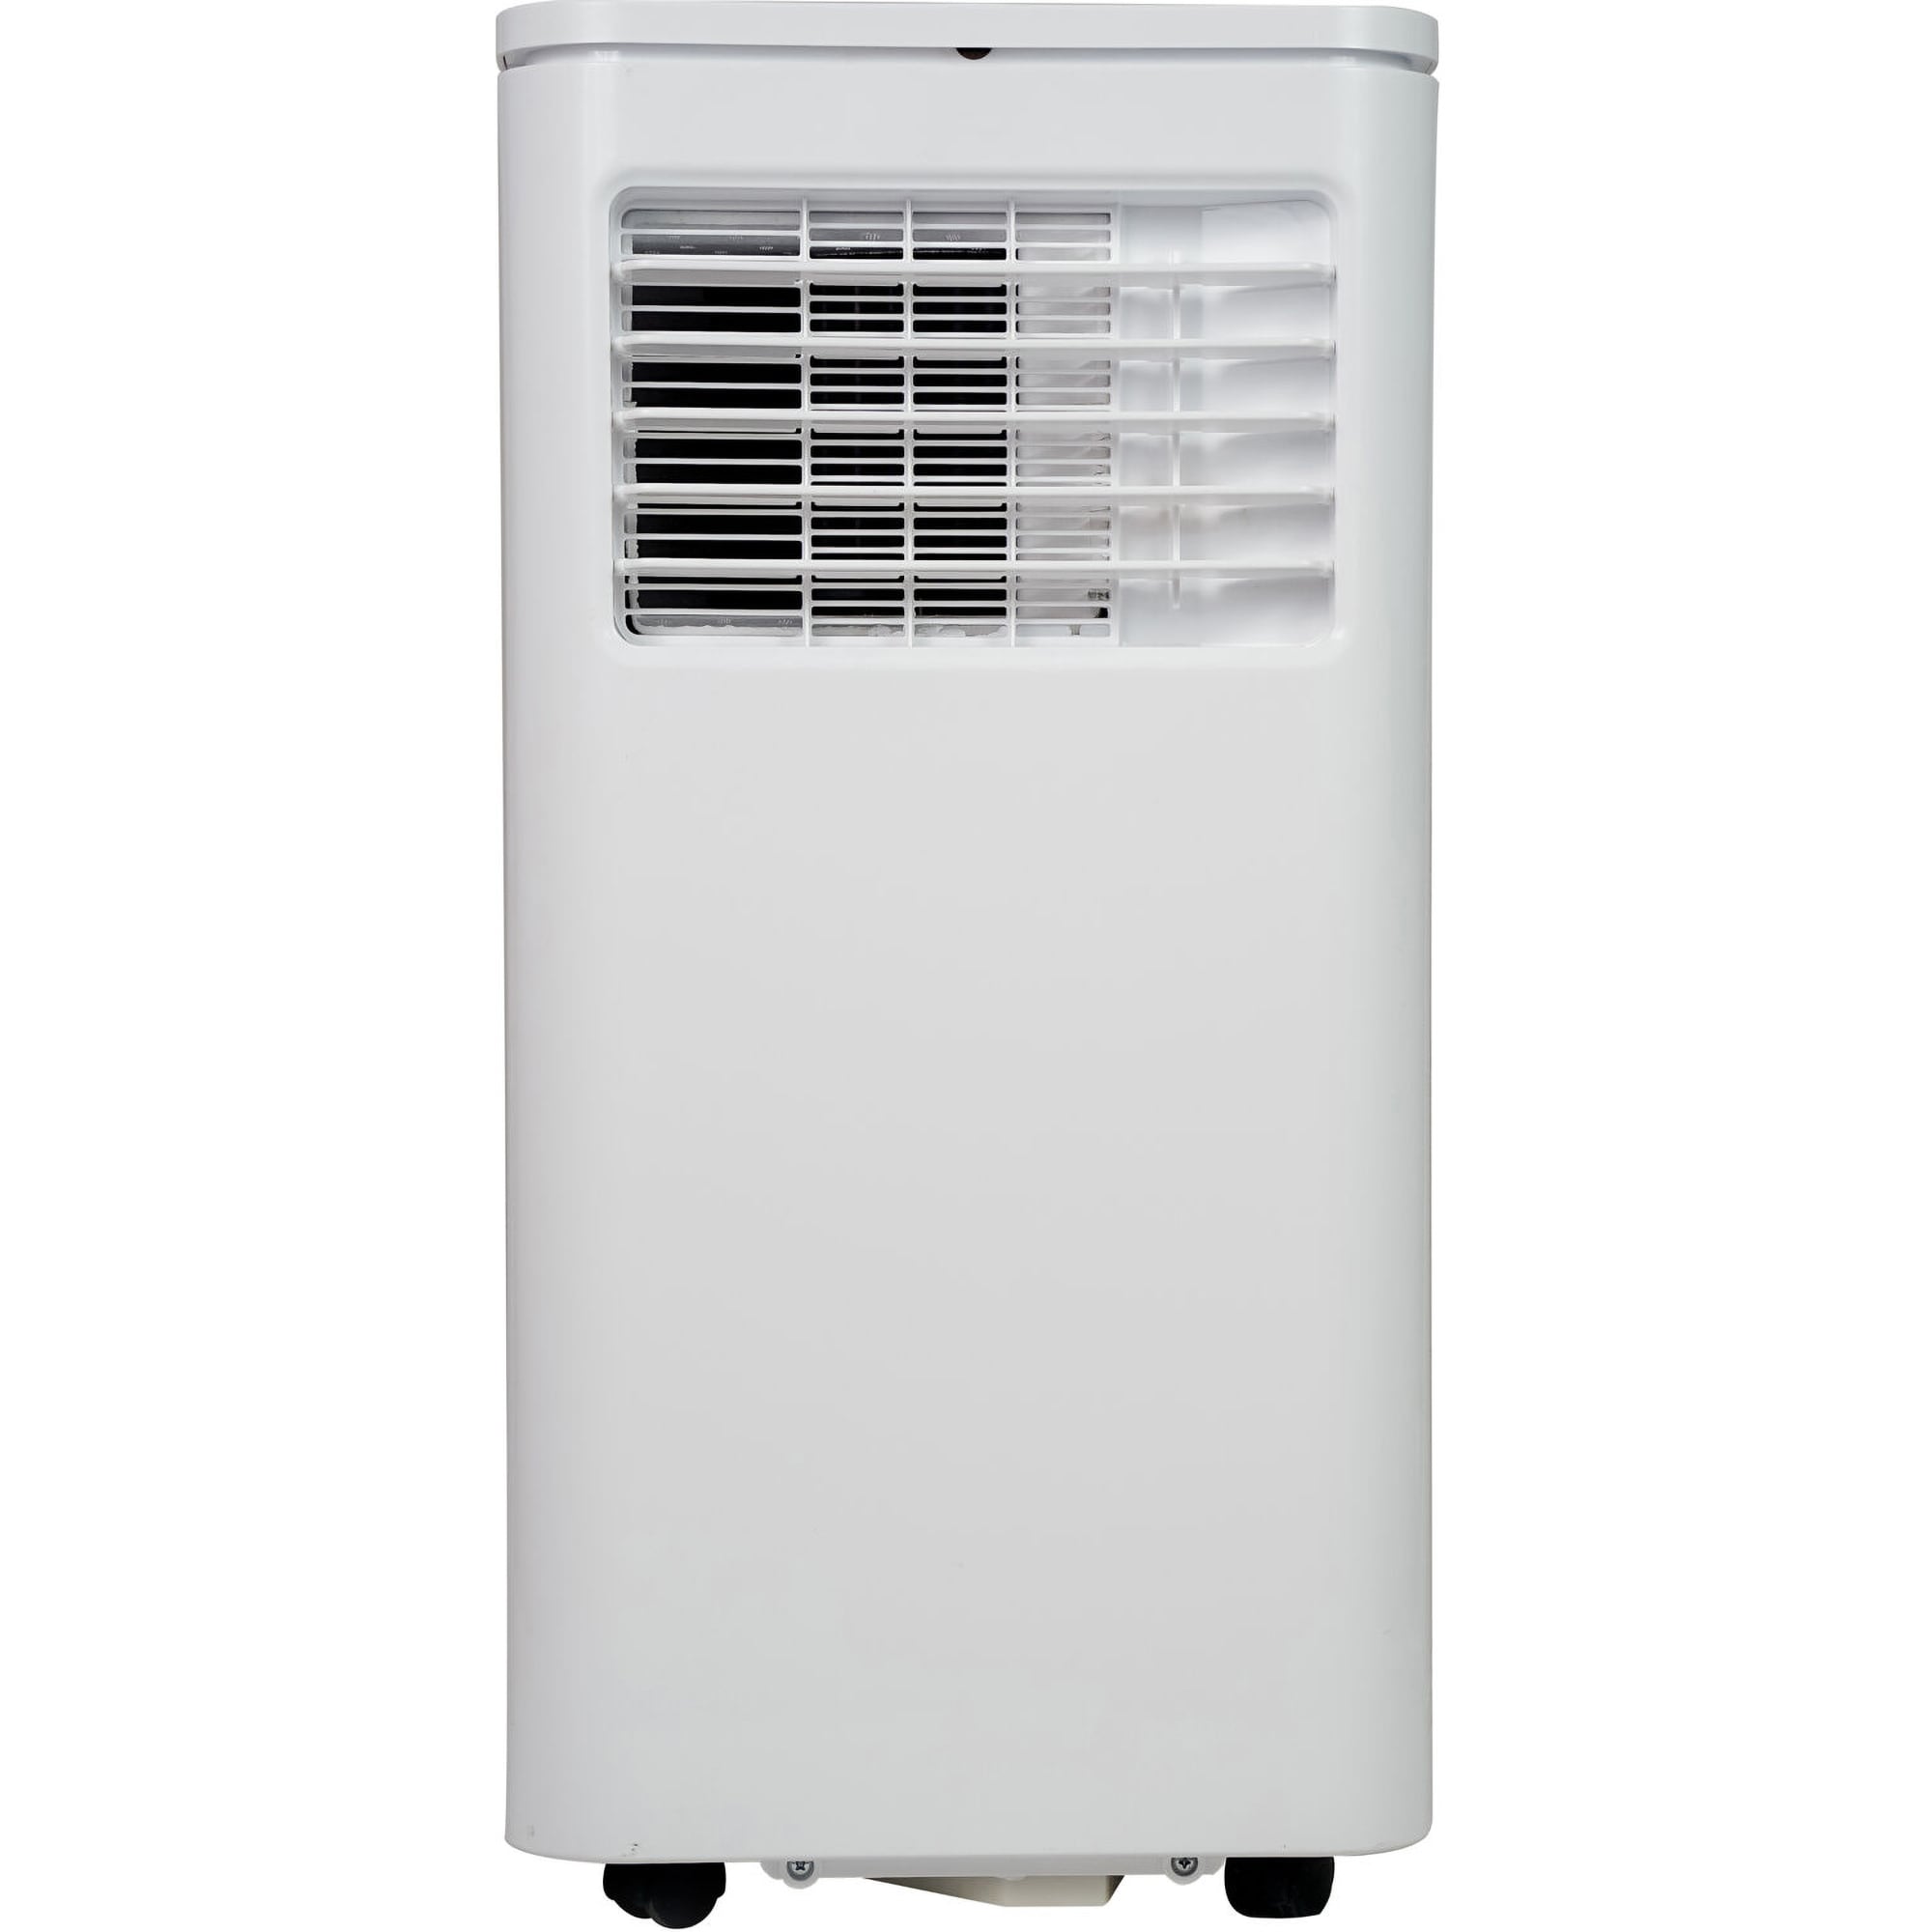  AIRO COMFORT Portable Air Conditioner 10000 BTU for